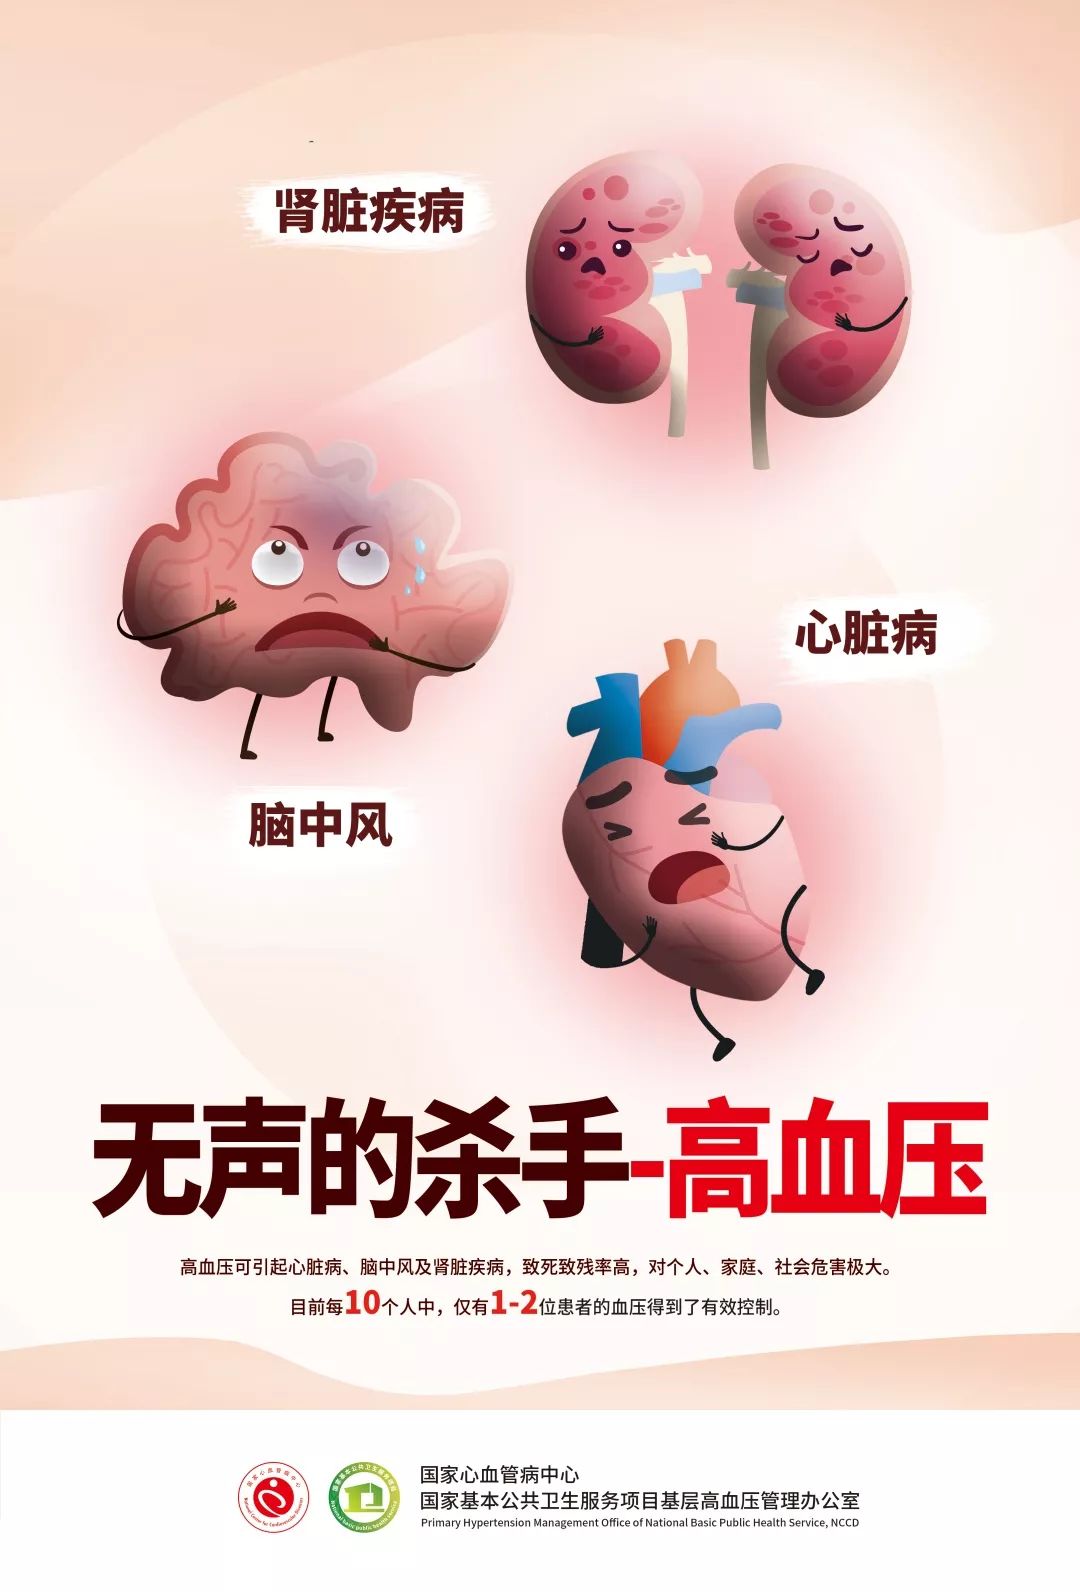 【海报来了】国家基本公共卫生服务项目之高血压患者健康管理